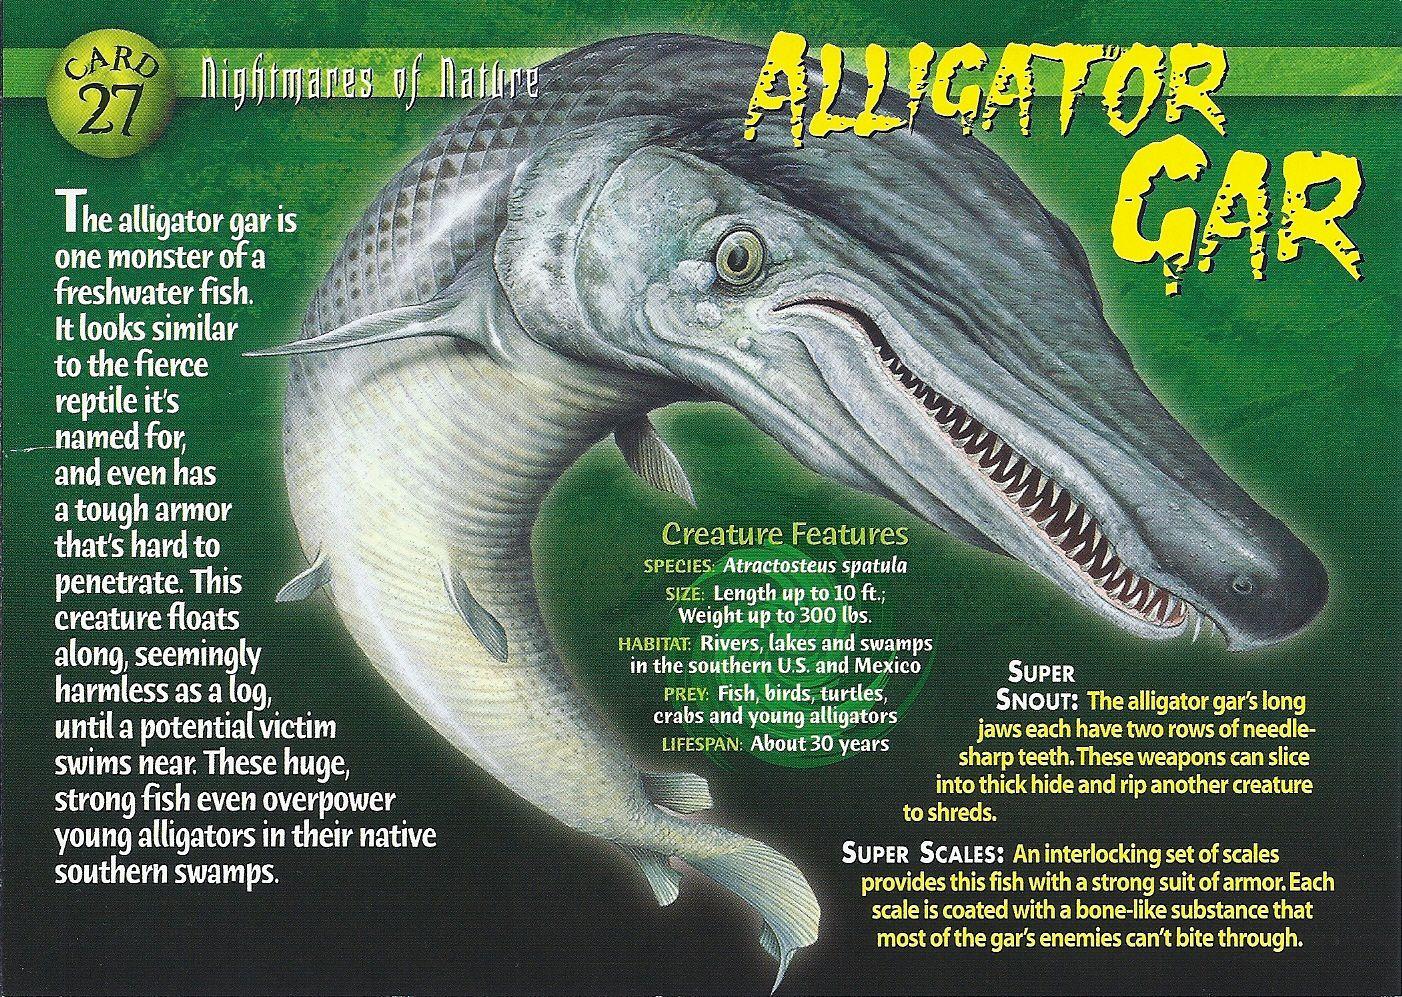 Alligator Gar Logo - Alligator Gar | Weird n' Wild Creatures Wiki | FANDOM powered by Wikia